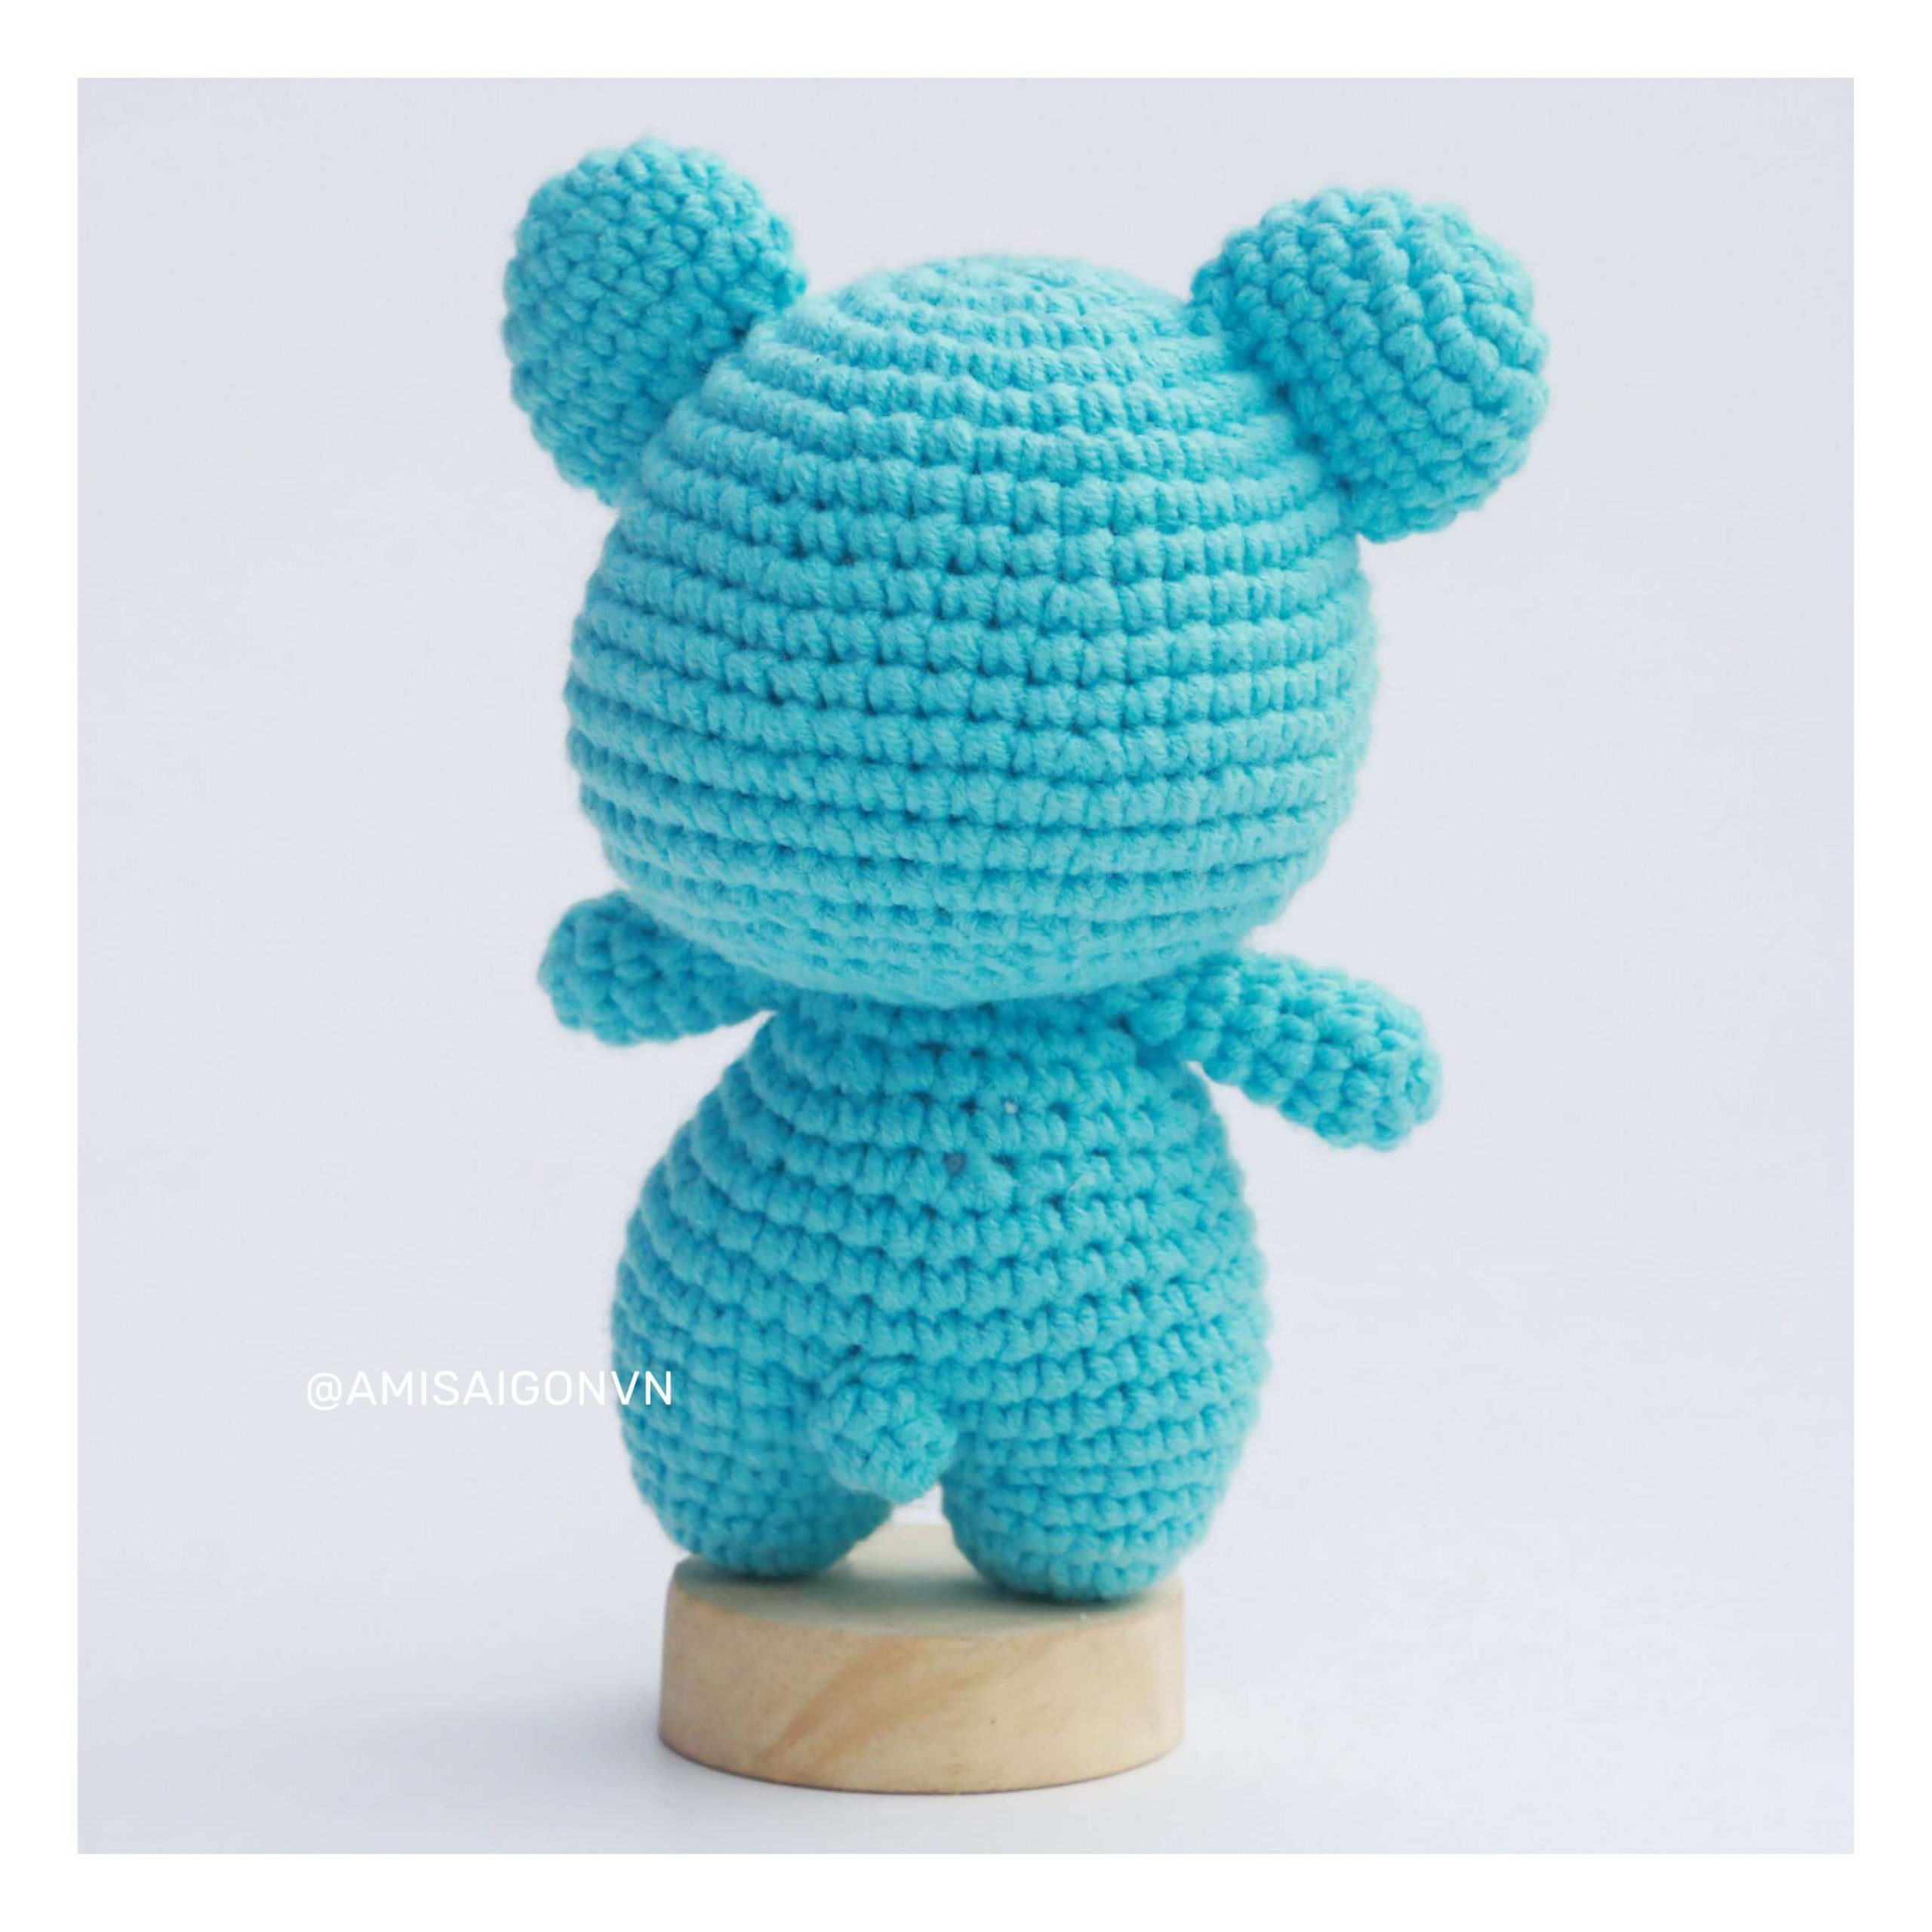 koya-amigurumi-crochet-pattern-amisaigon (12)